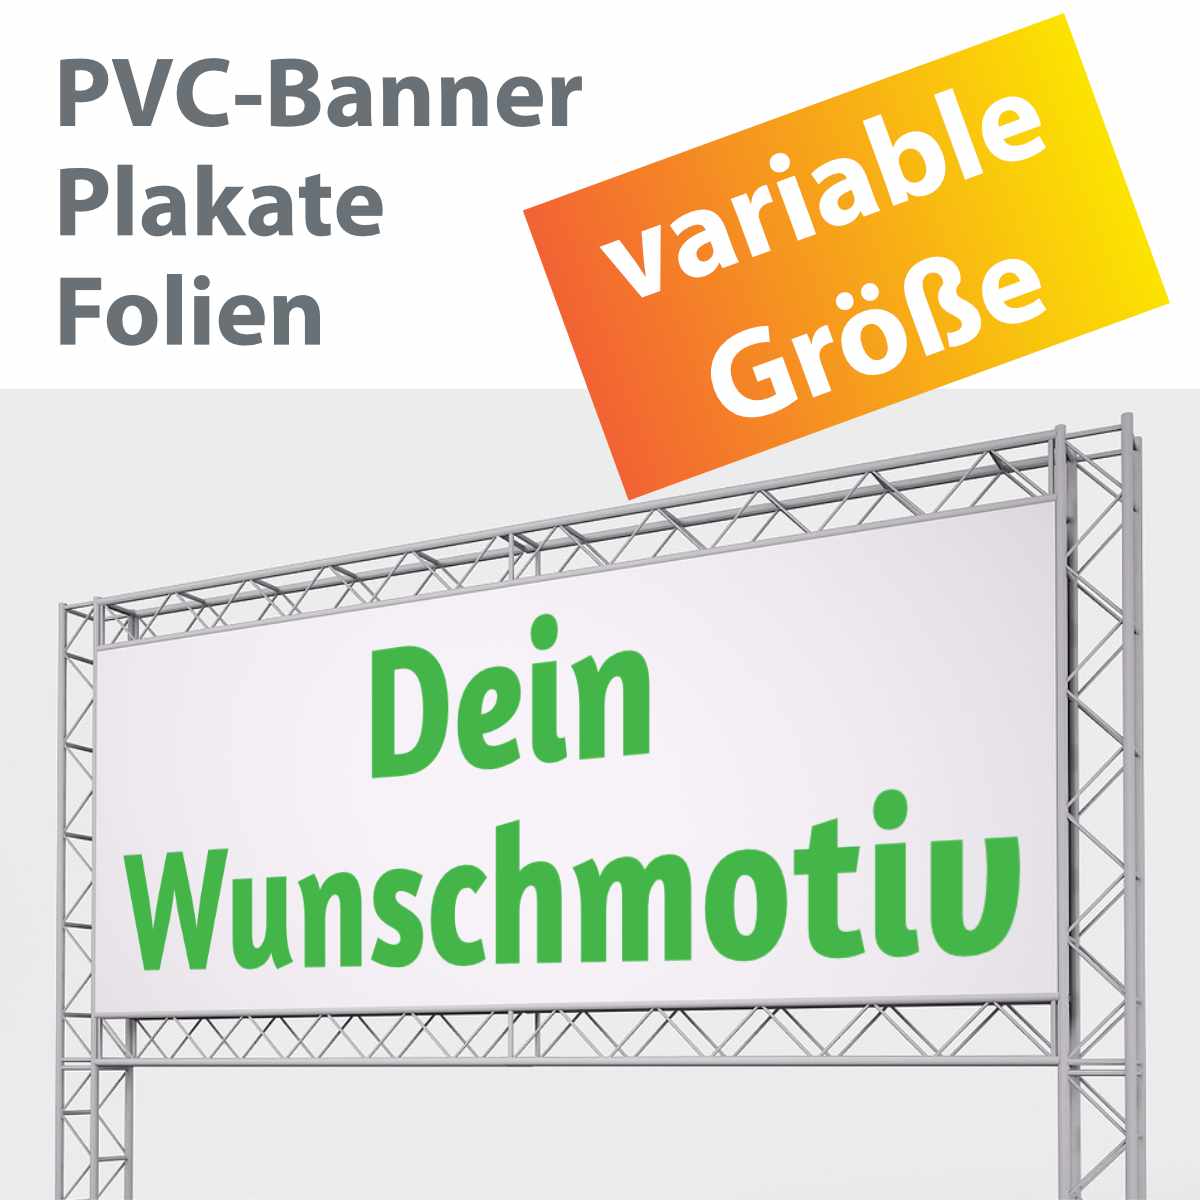 PVC Banner - Folie - Plakat selbst gestalten & online drucken